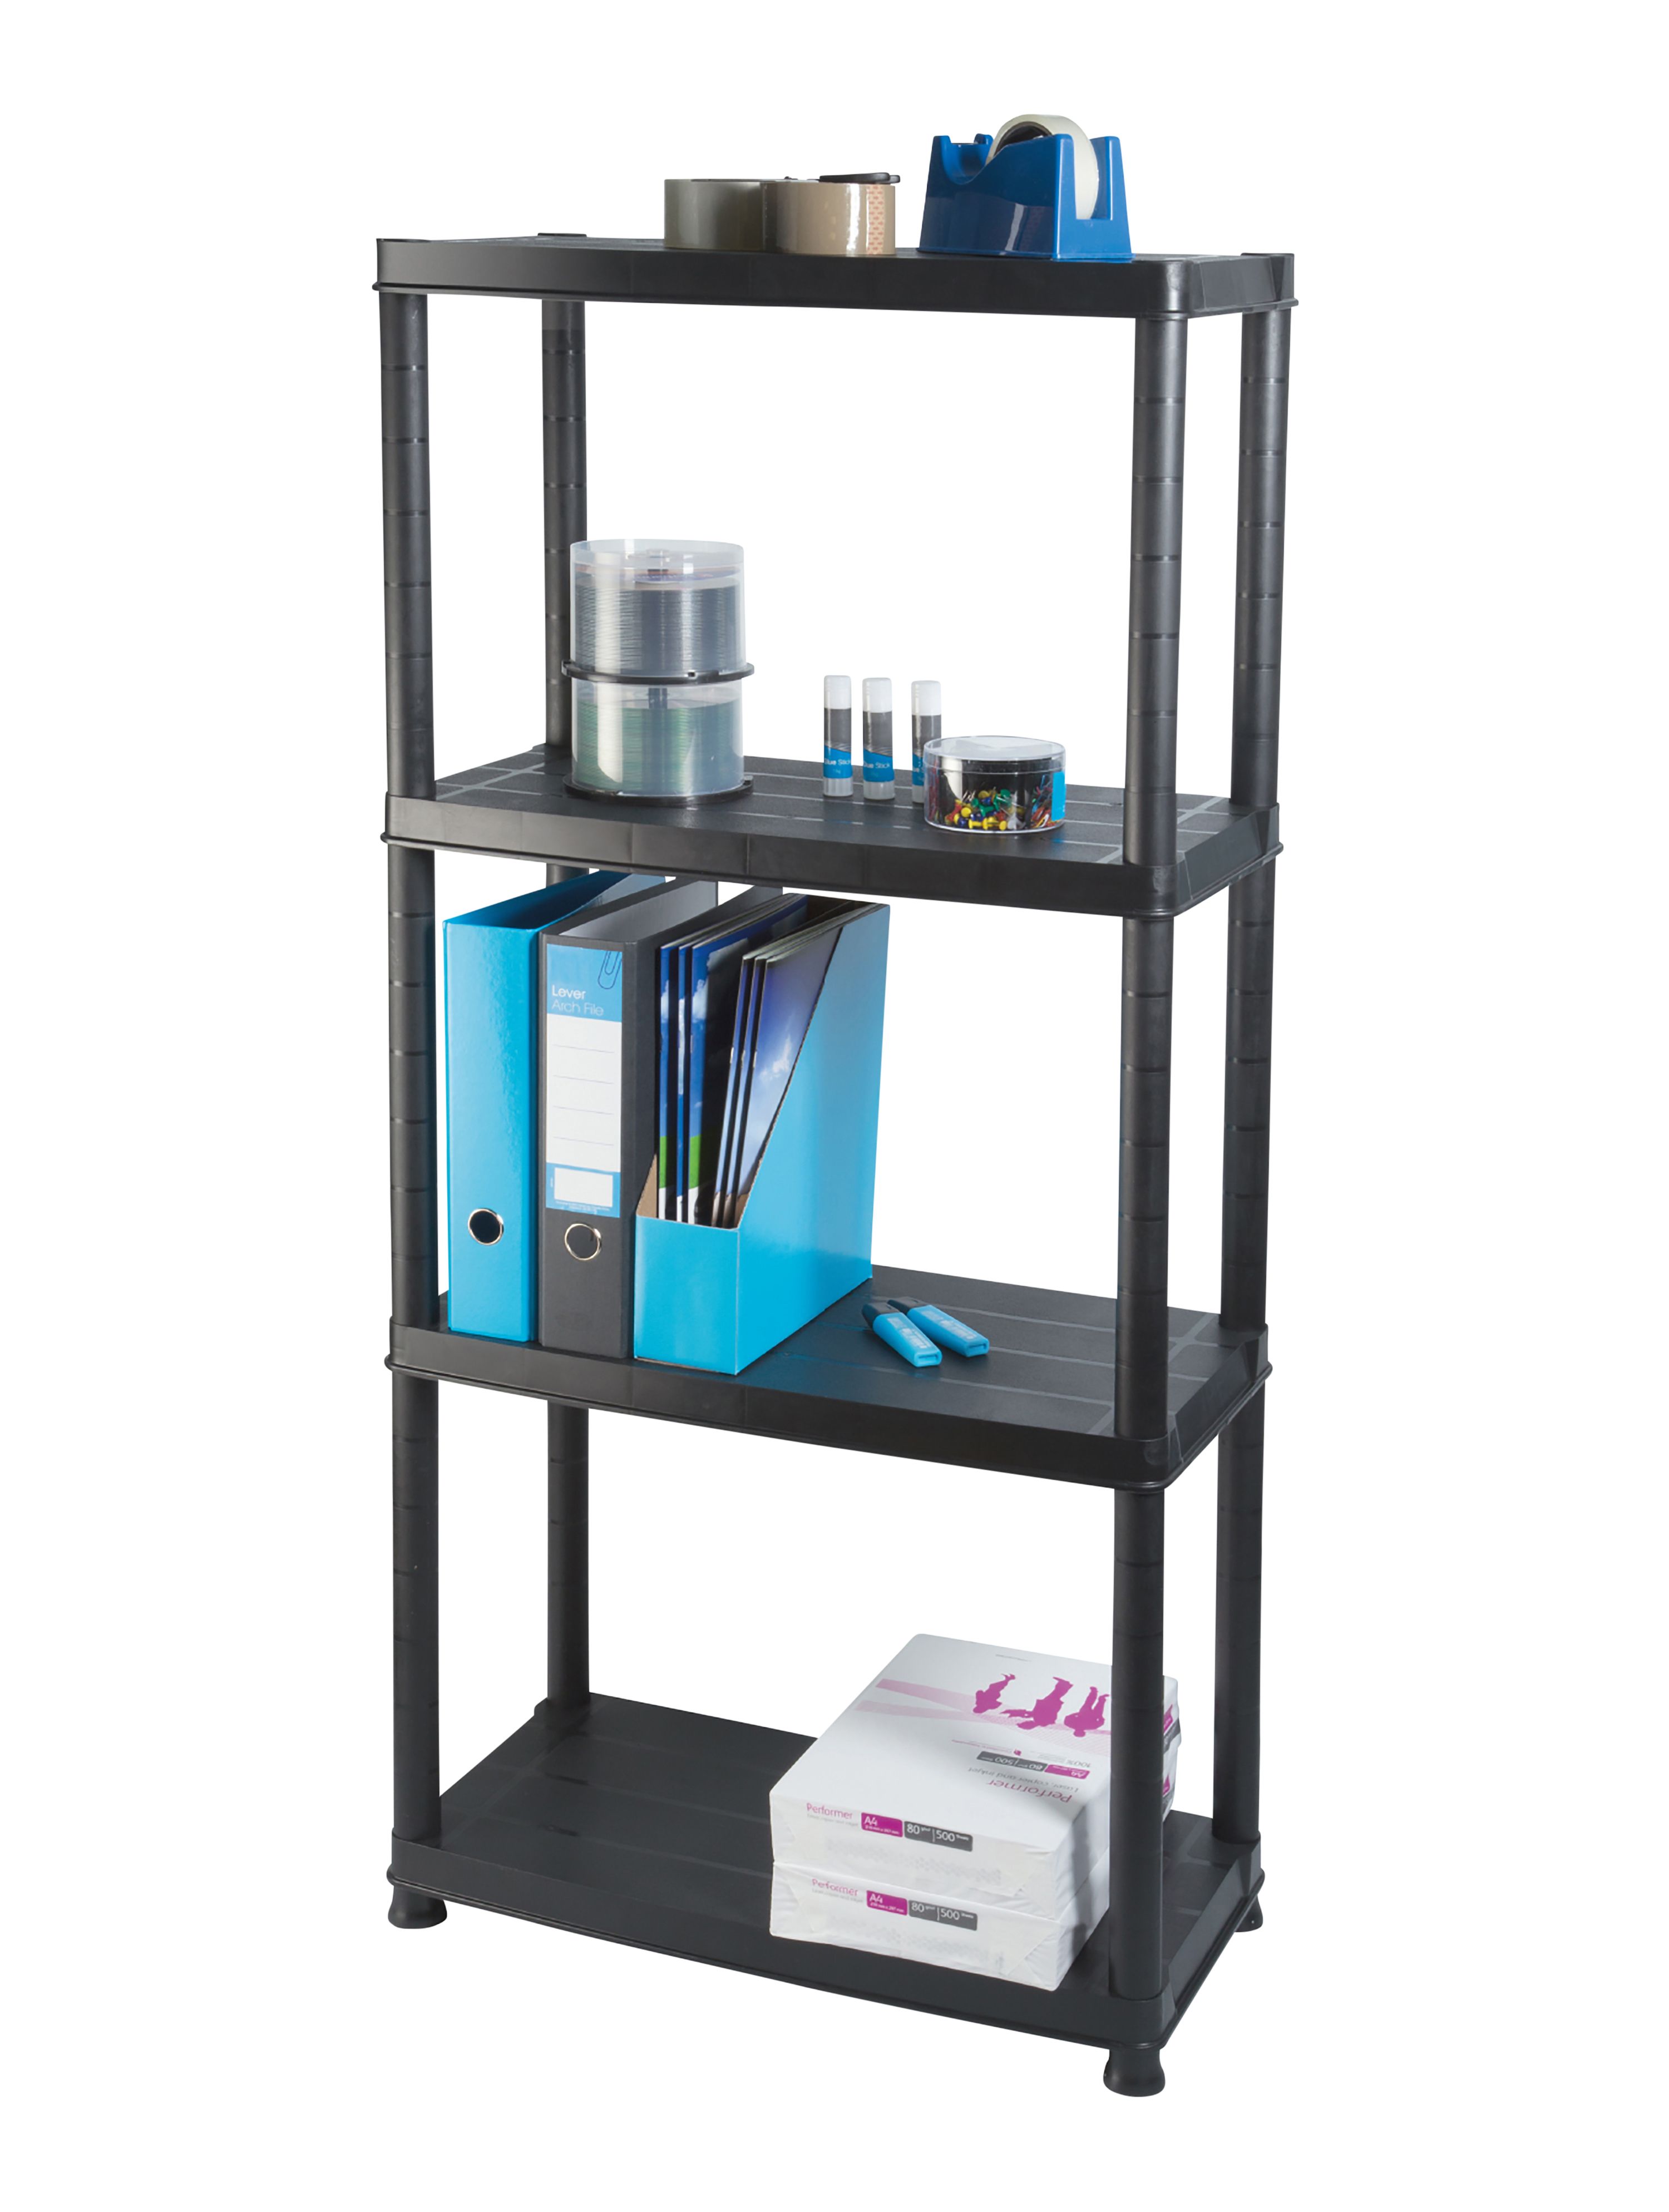 Links 4 shelf Plastic Shelving unit (H)1300mm (W)605mm (D)305mm